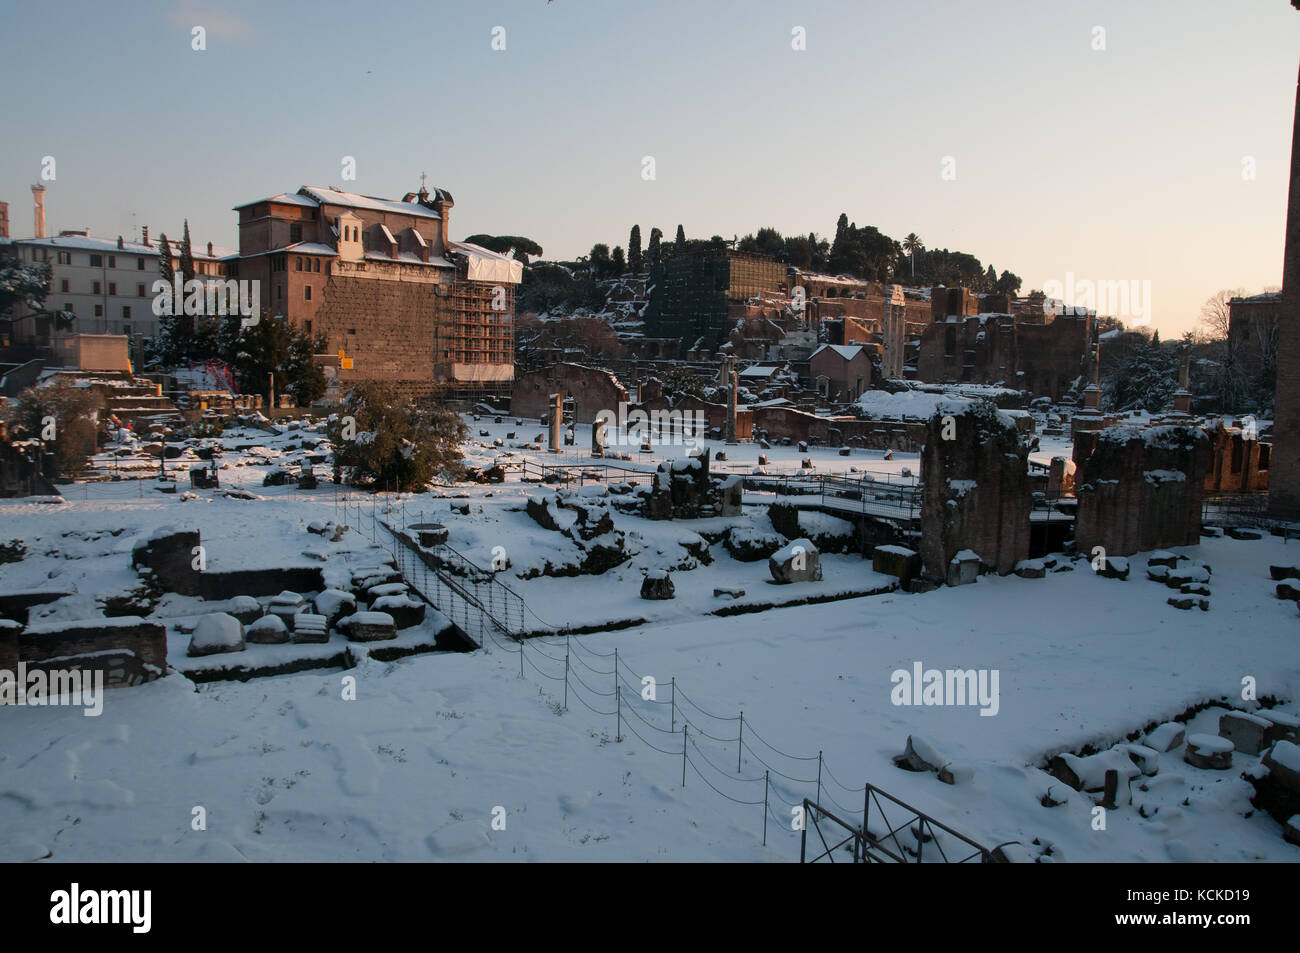 fori imperiali roma snow Stock Photo